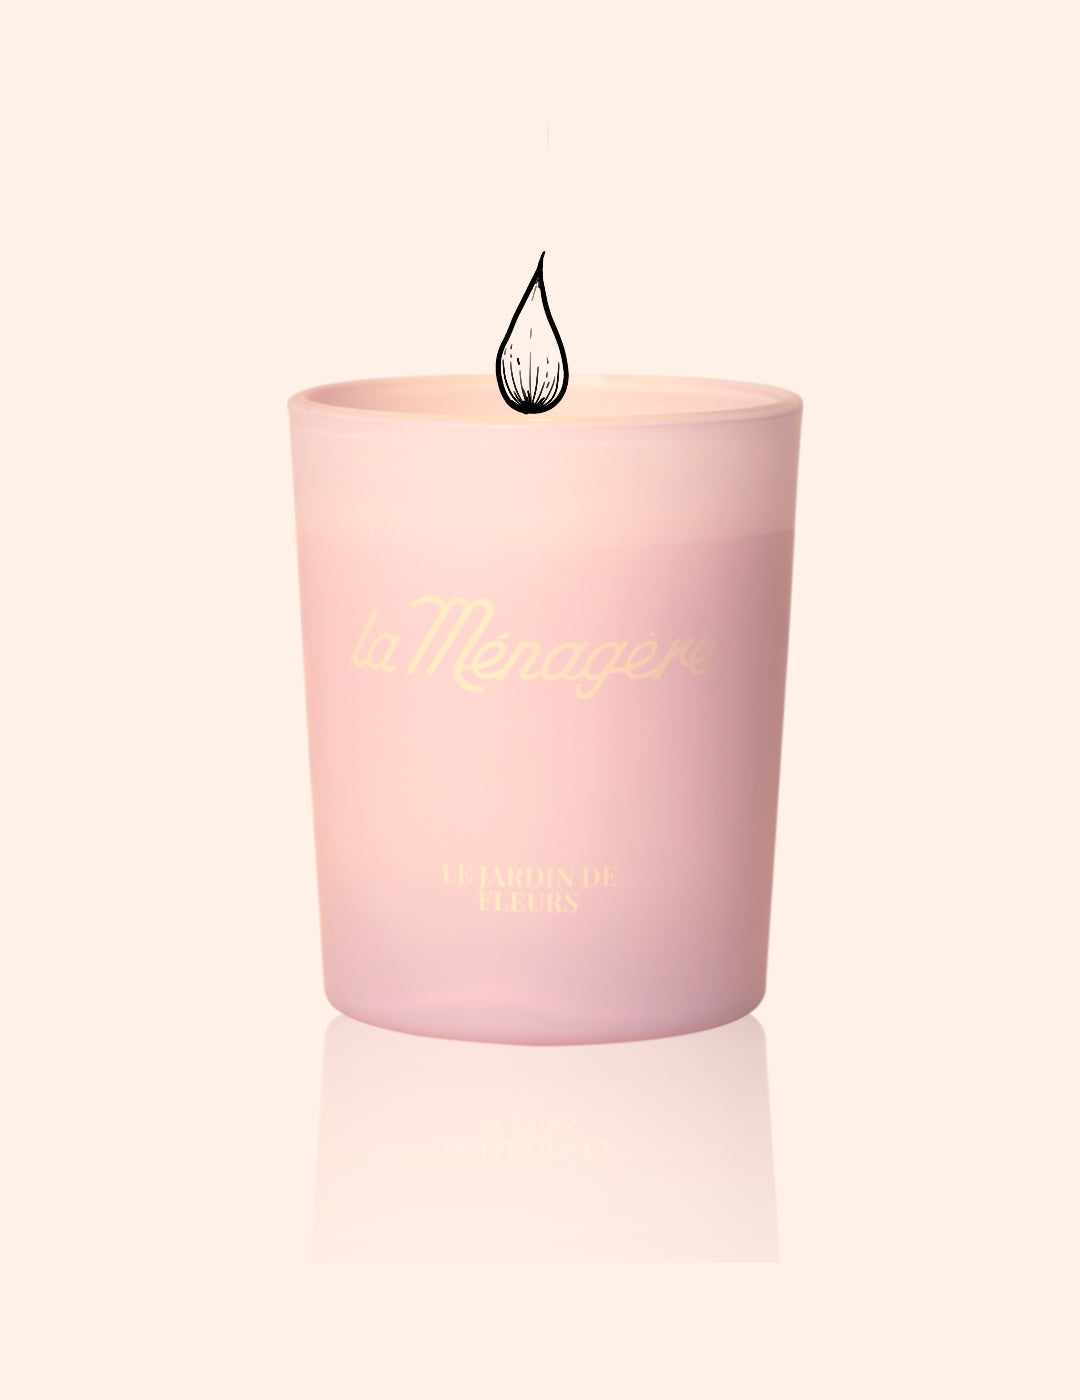 La Ménagère scented candle 70g